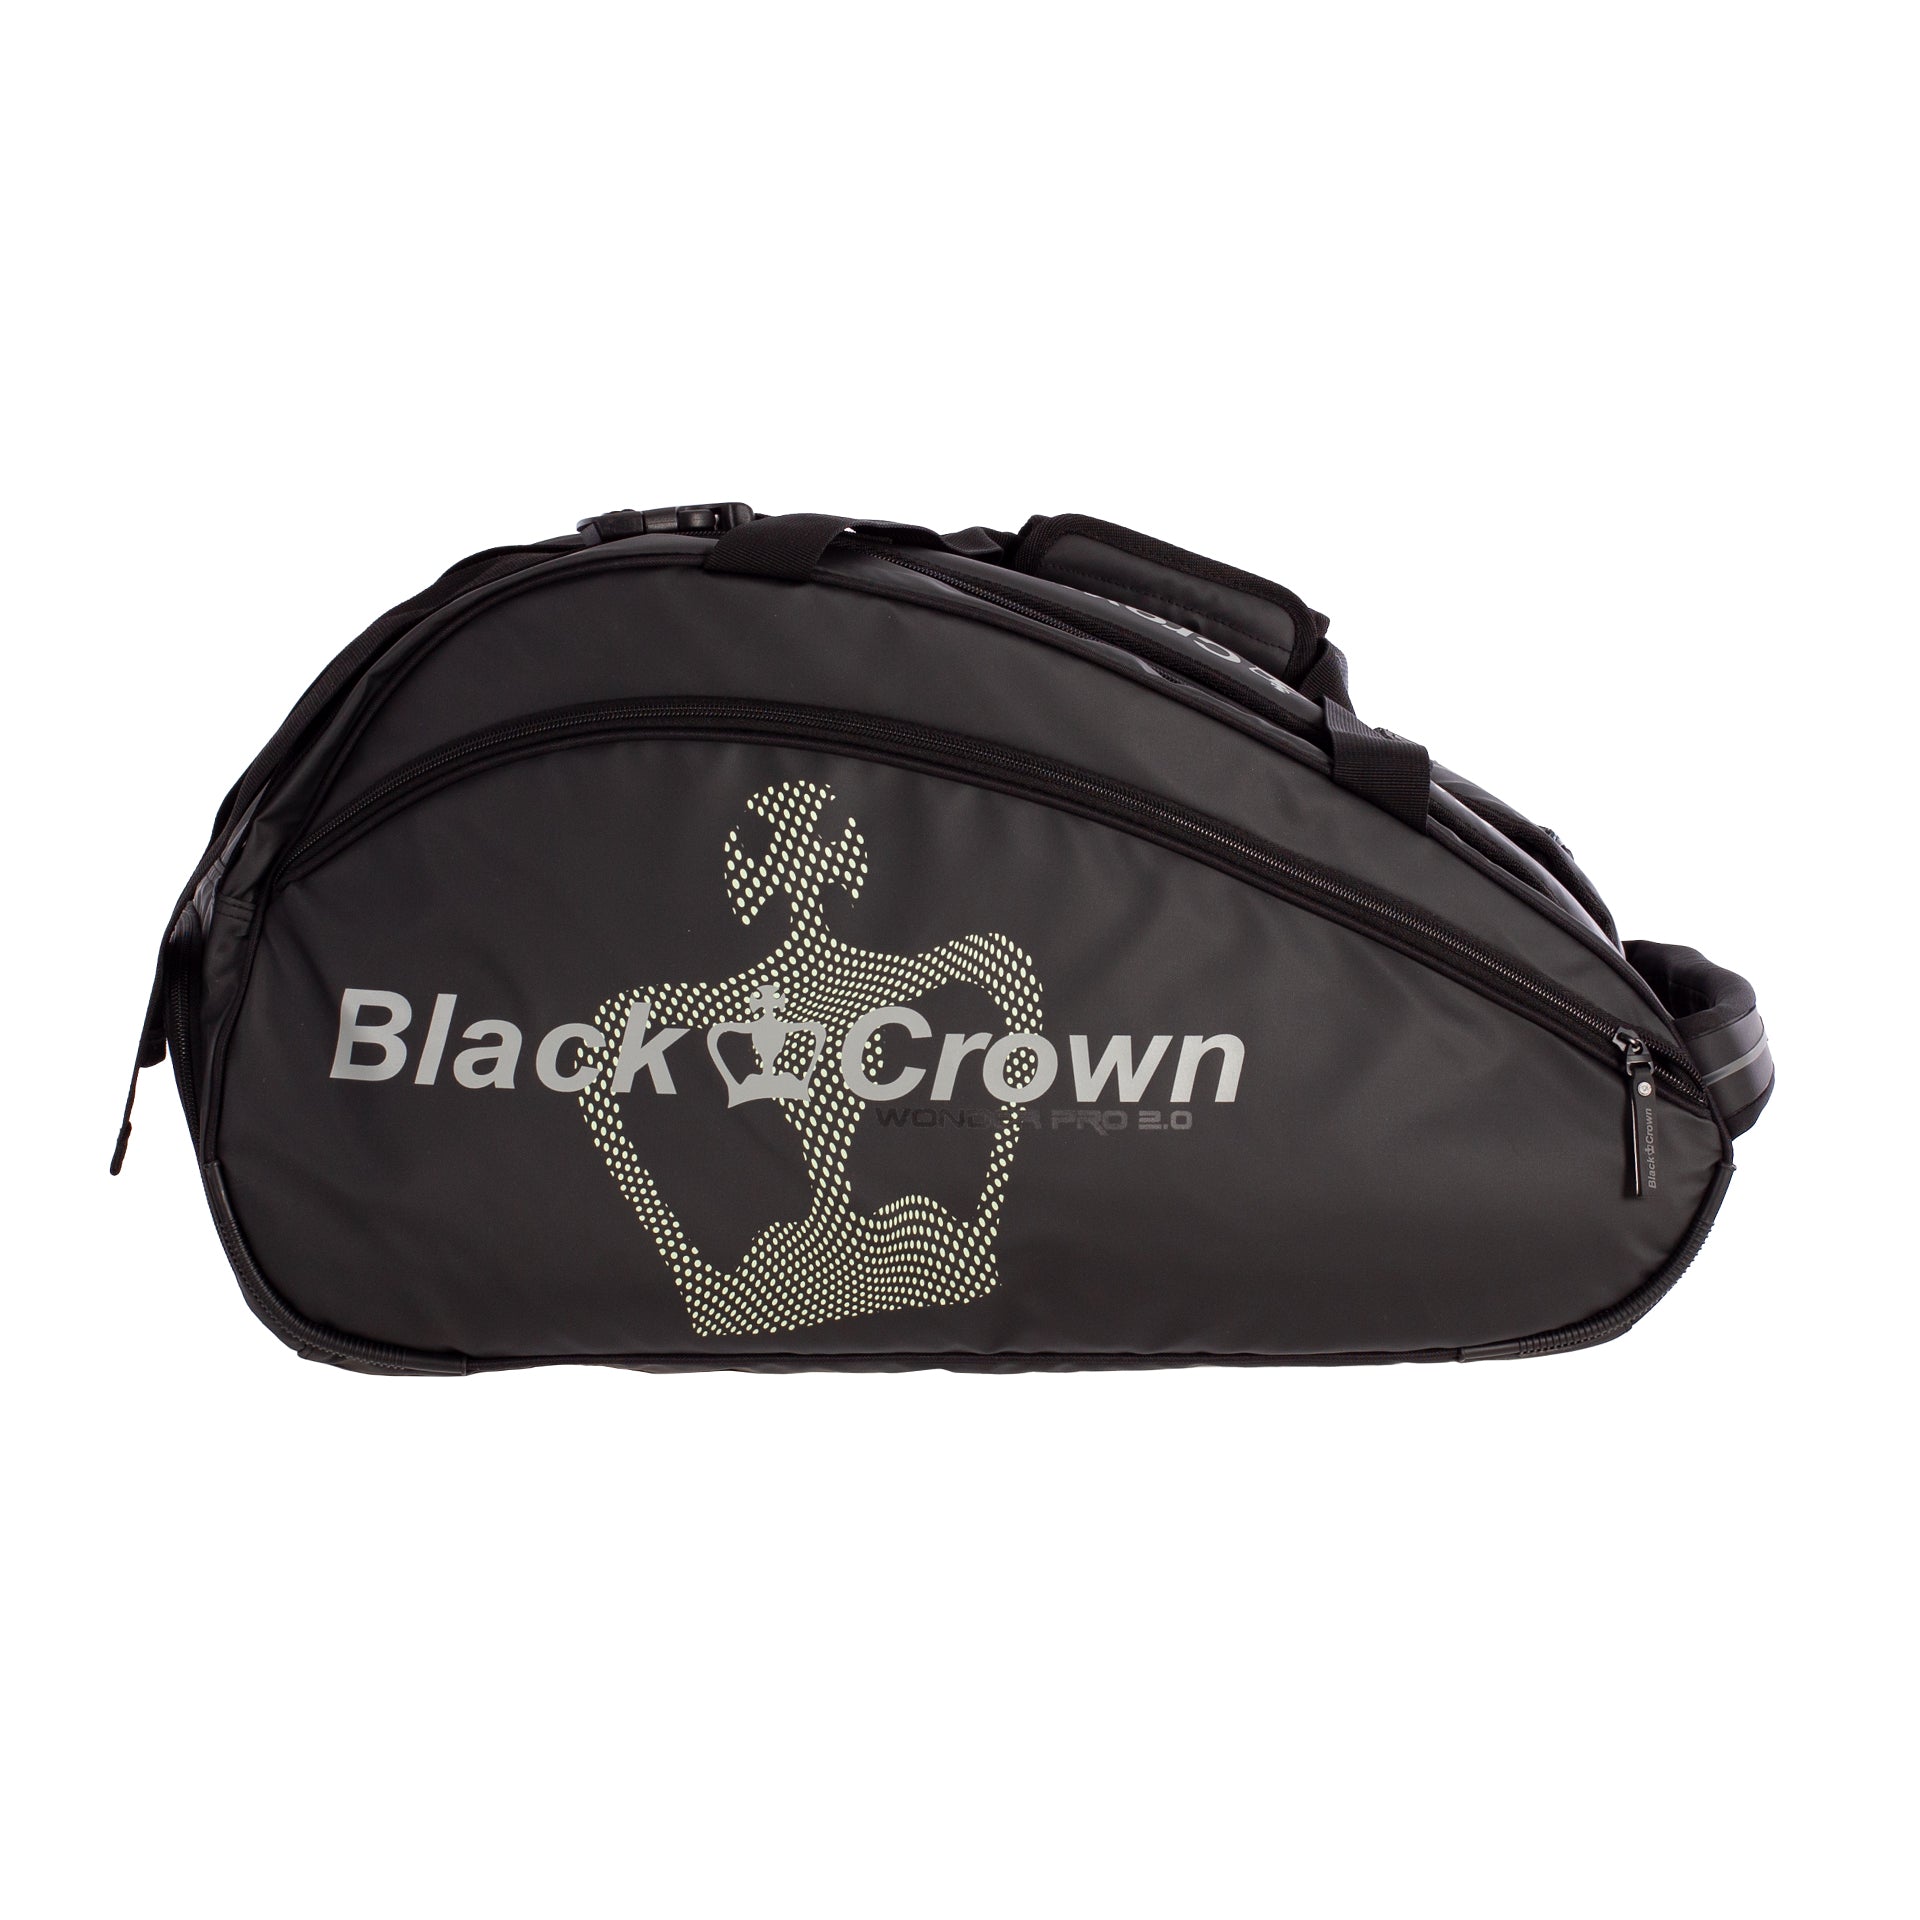 Paletero Wonder Pro 2.0 Black Crown 1